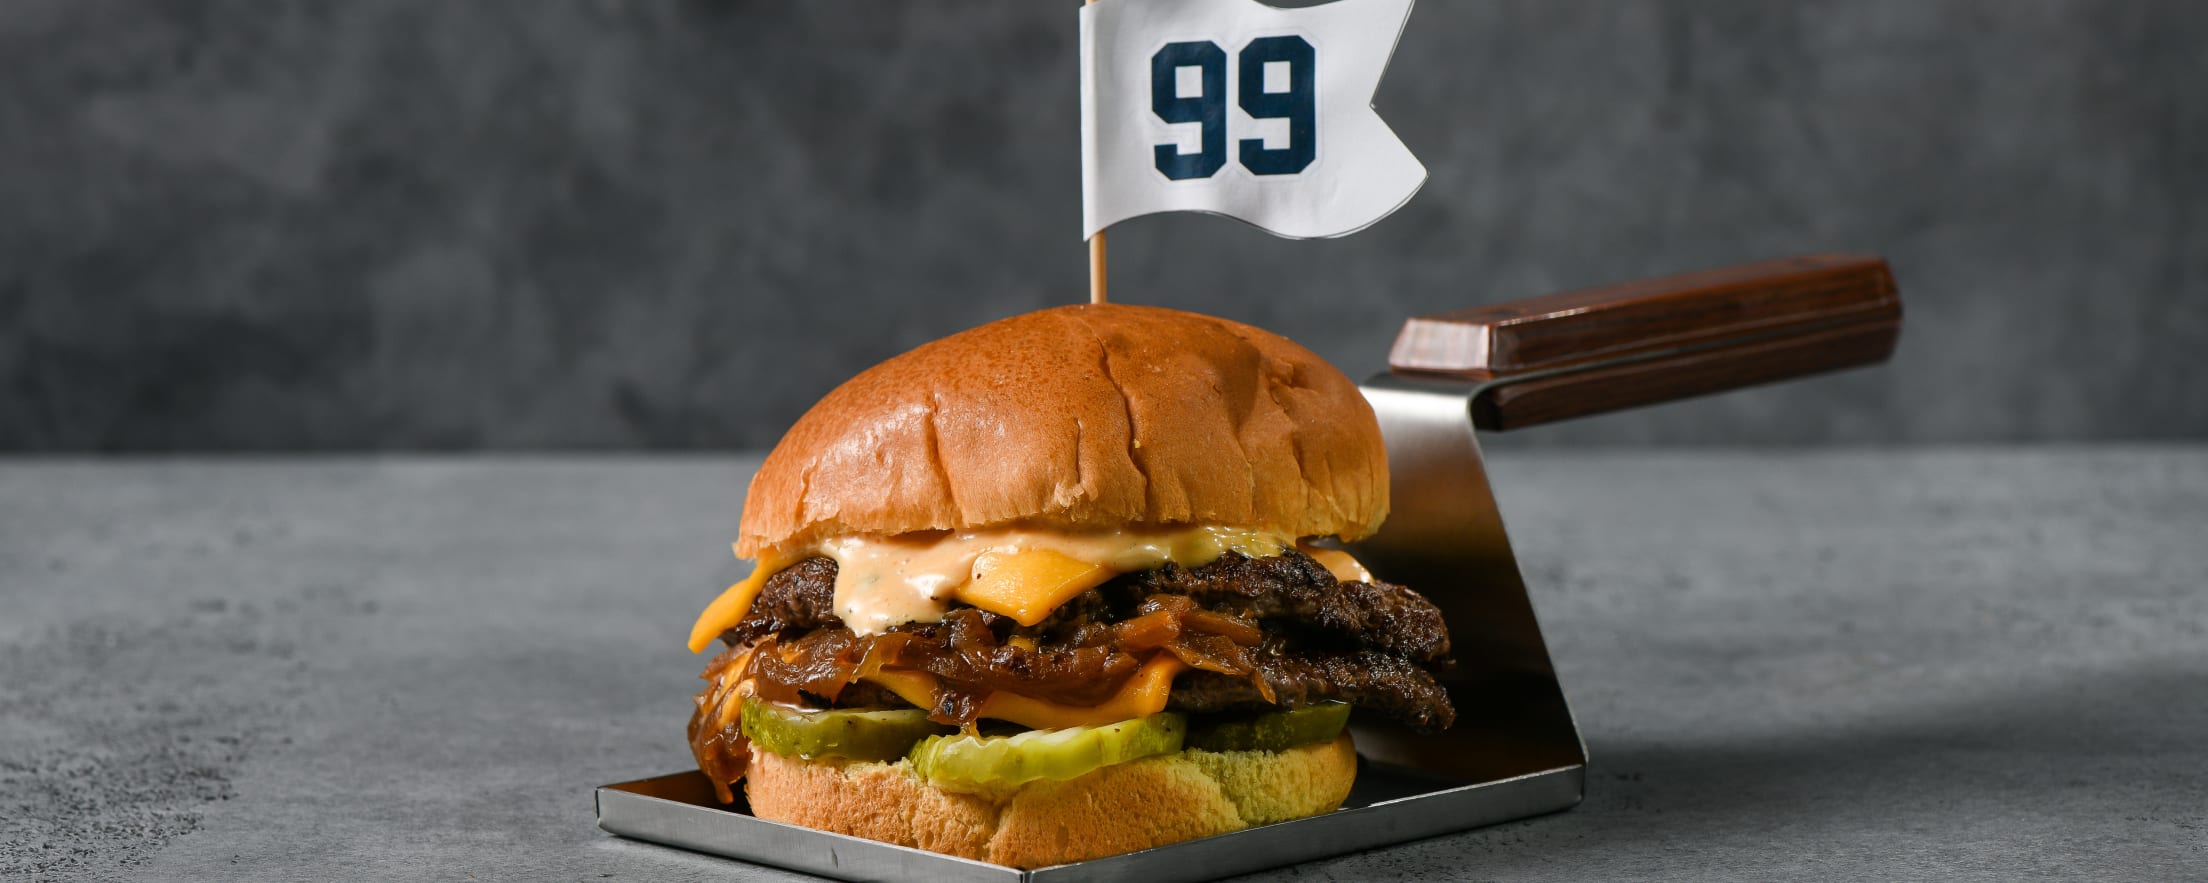 This Cheeseburger Sub Highlights The Exciting New Menu Items At